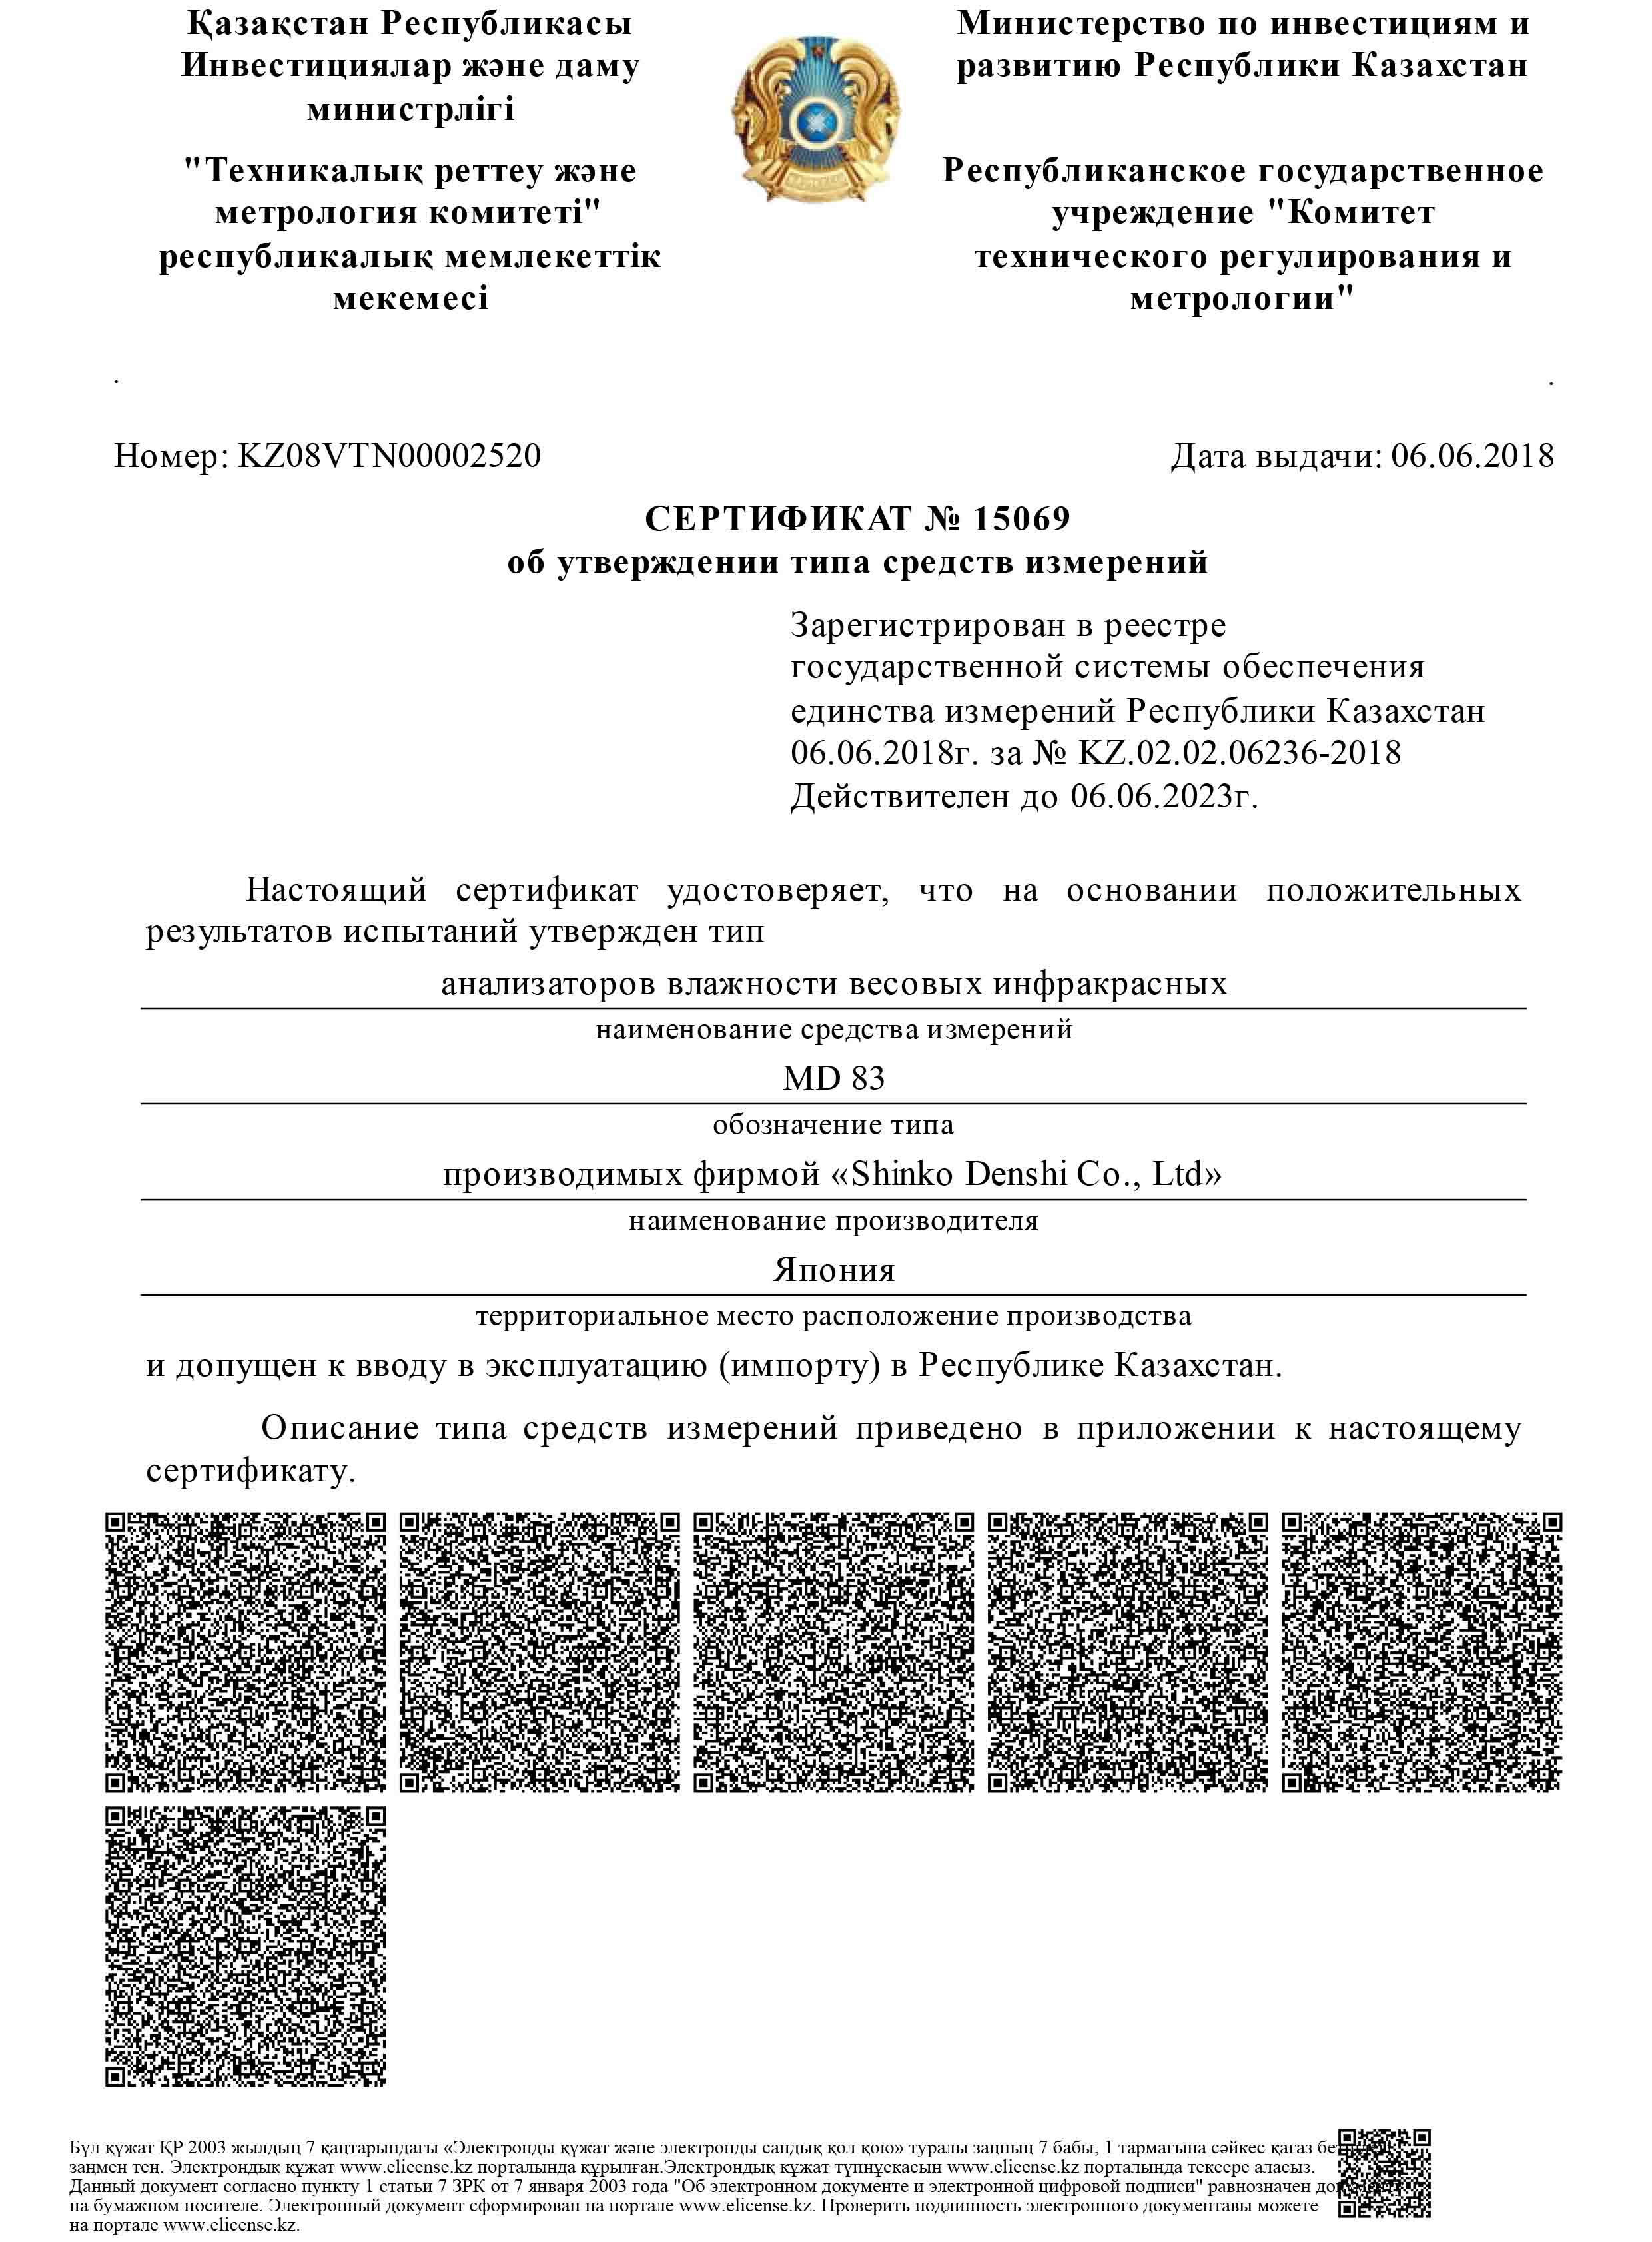 Анализаторы влажности ViBRA MD прошли сертификацию об утверждении типа средств измерений в Казахстане